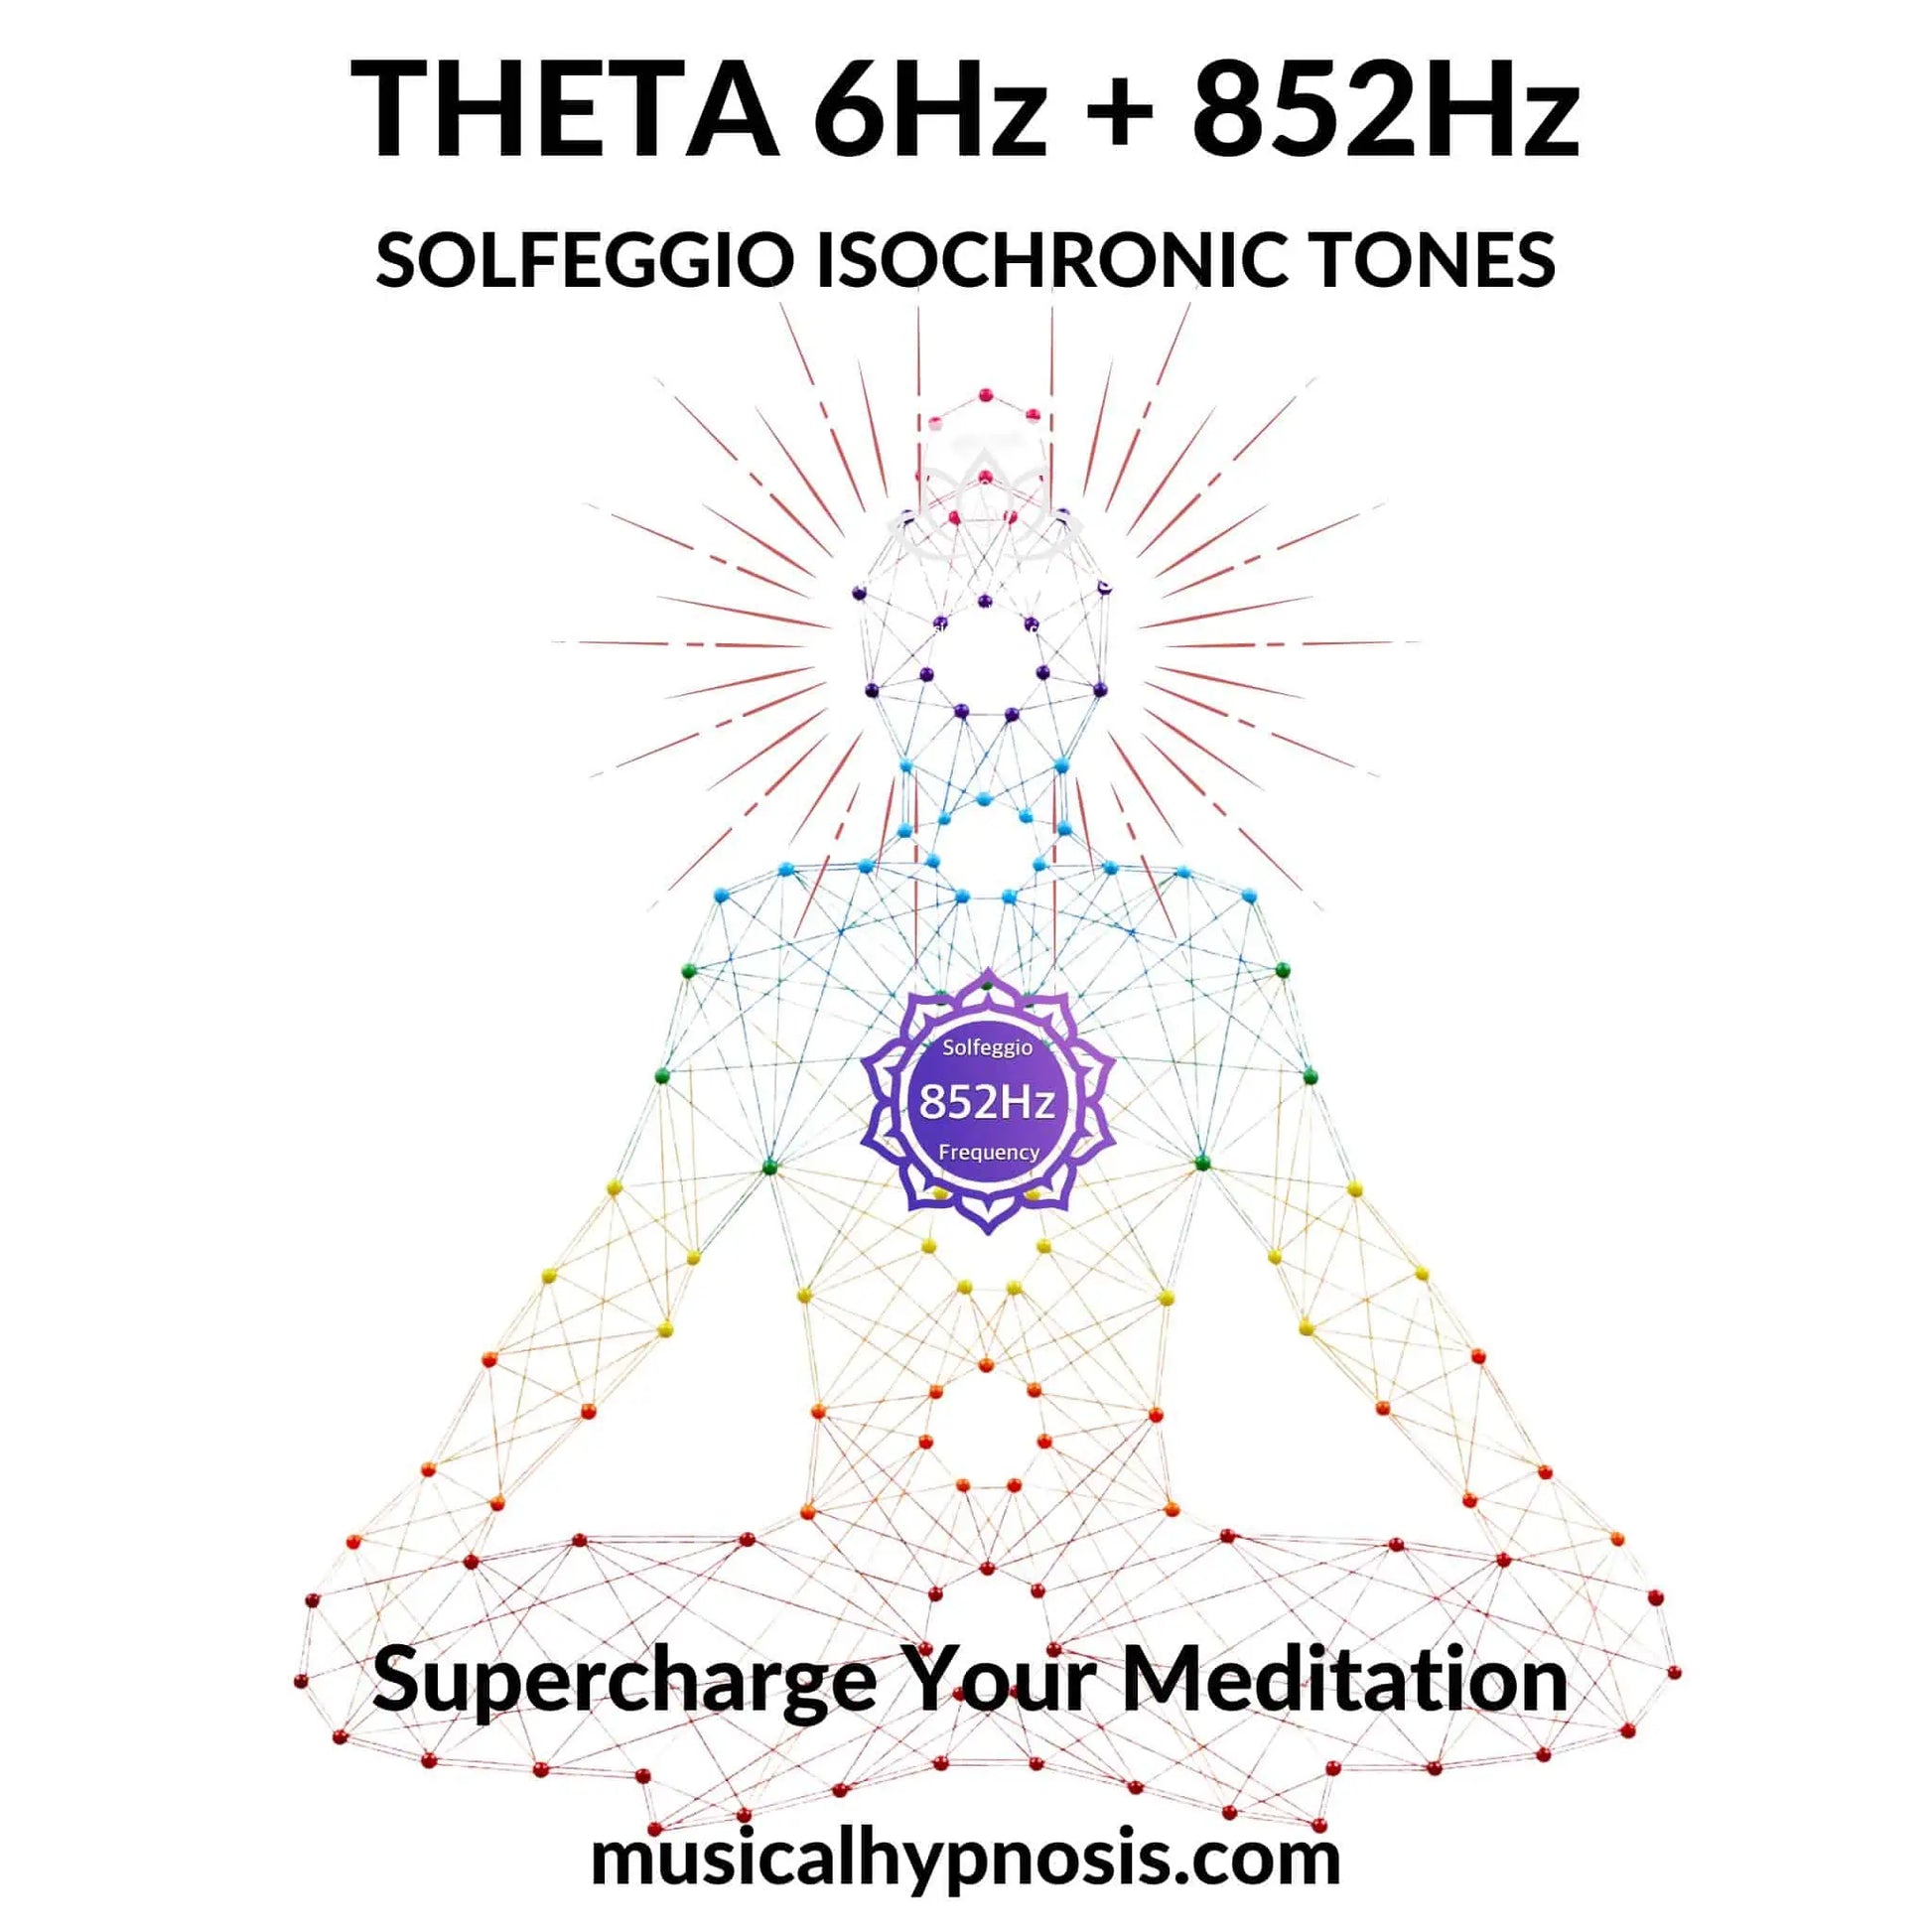 Theta 6Hz and 852Hz Solfeggio Isochronic Tones | 30 minutes